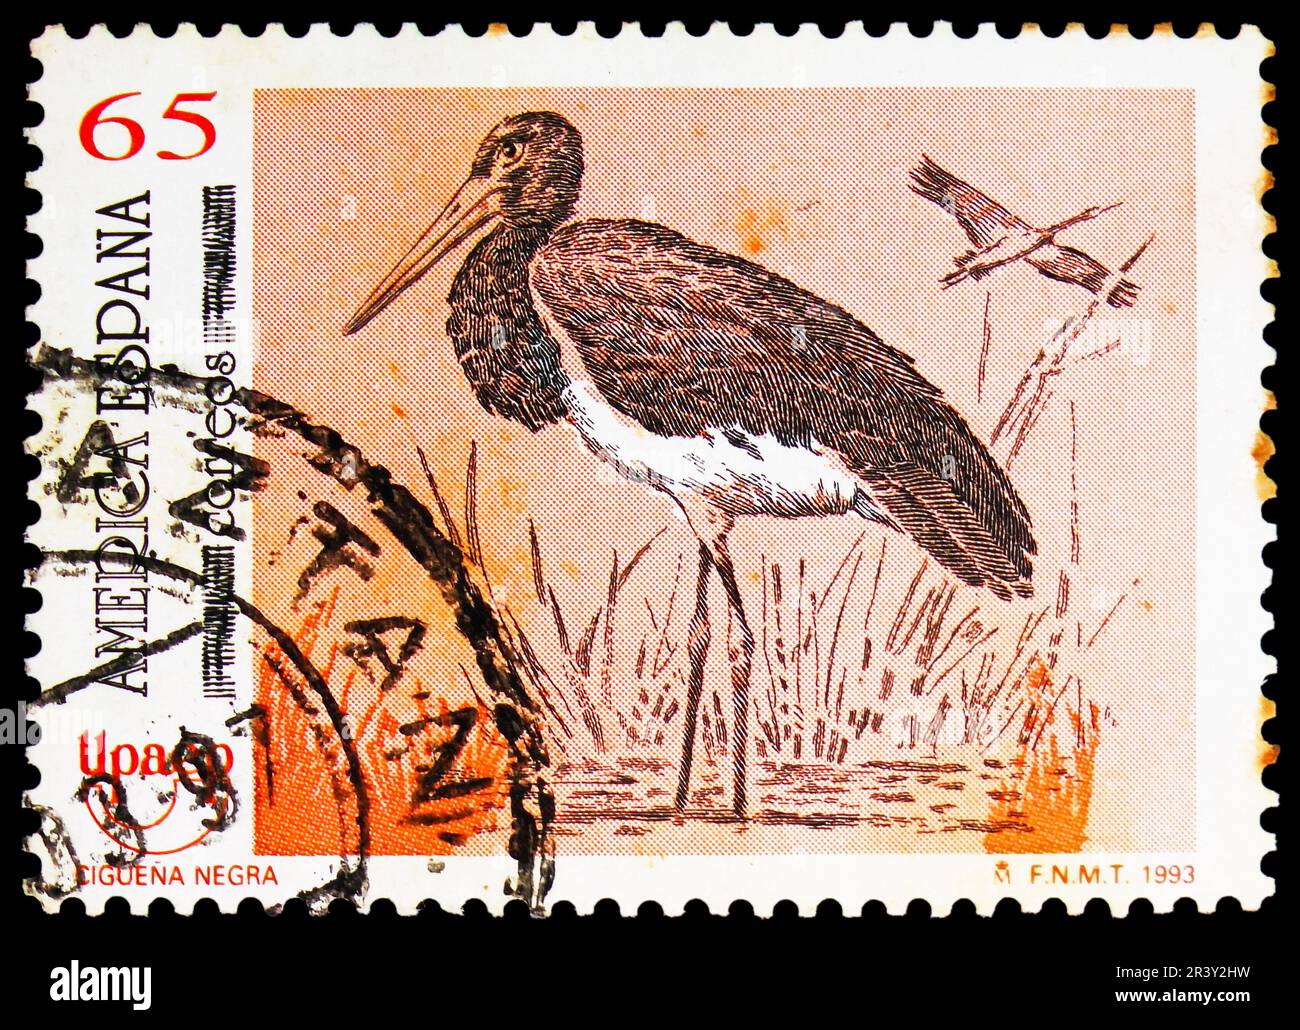 MOSCOU, RUSSIE - 18 MAI 2023 : timbre-poste imprimé en Espagne montre le porc noir (Ciconia nigra), série America UPAEP (1993), vers 1993 Banque D'Images